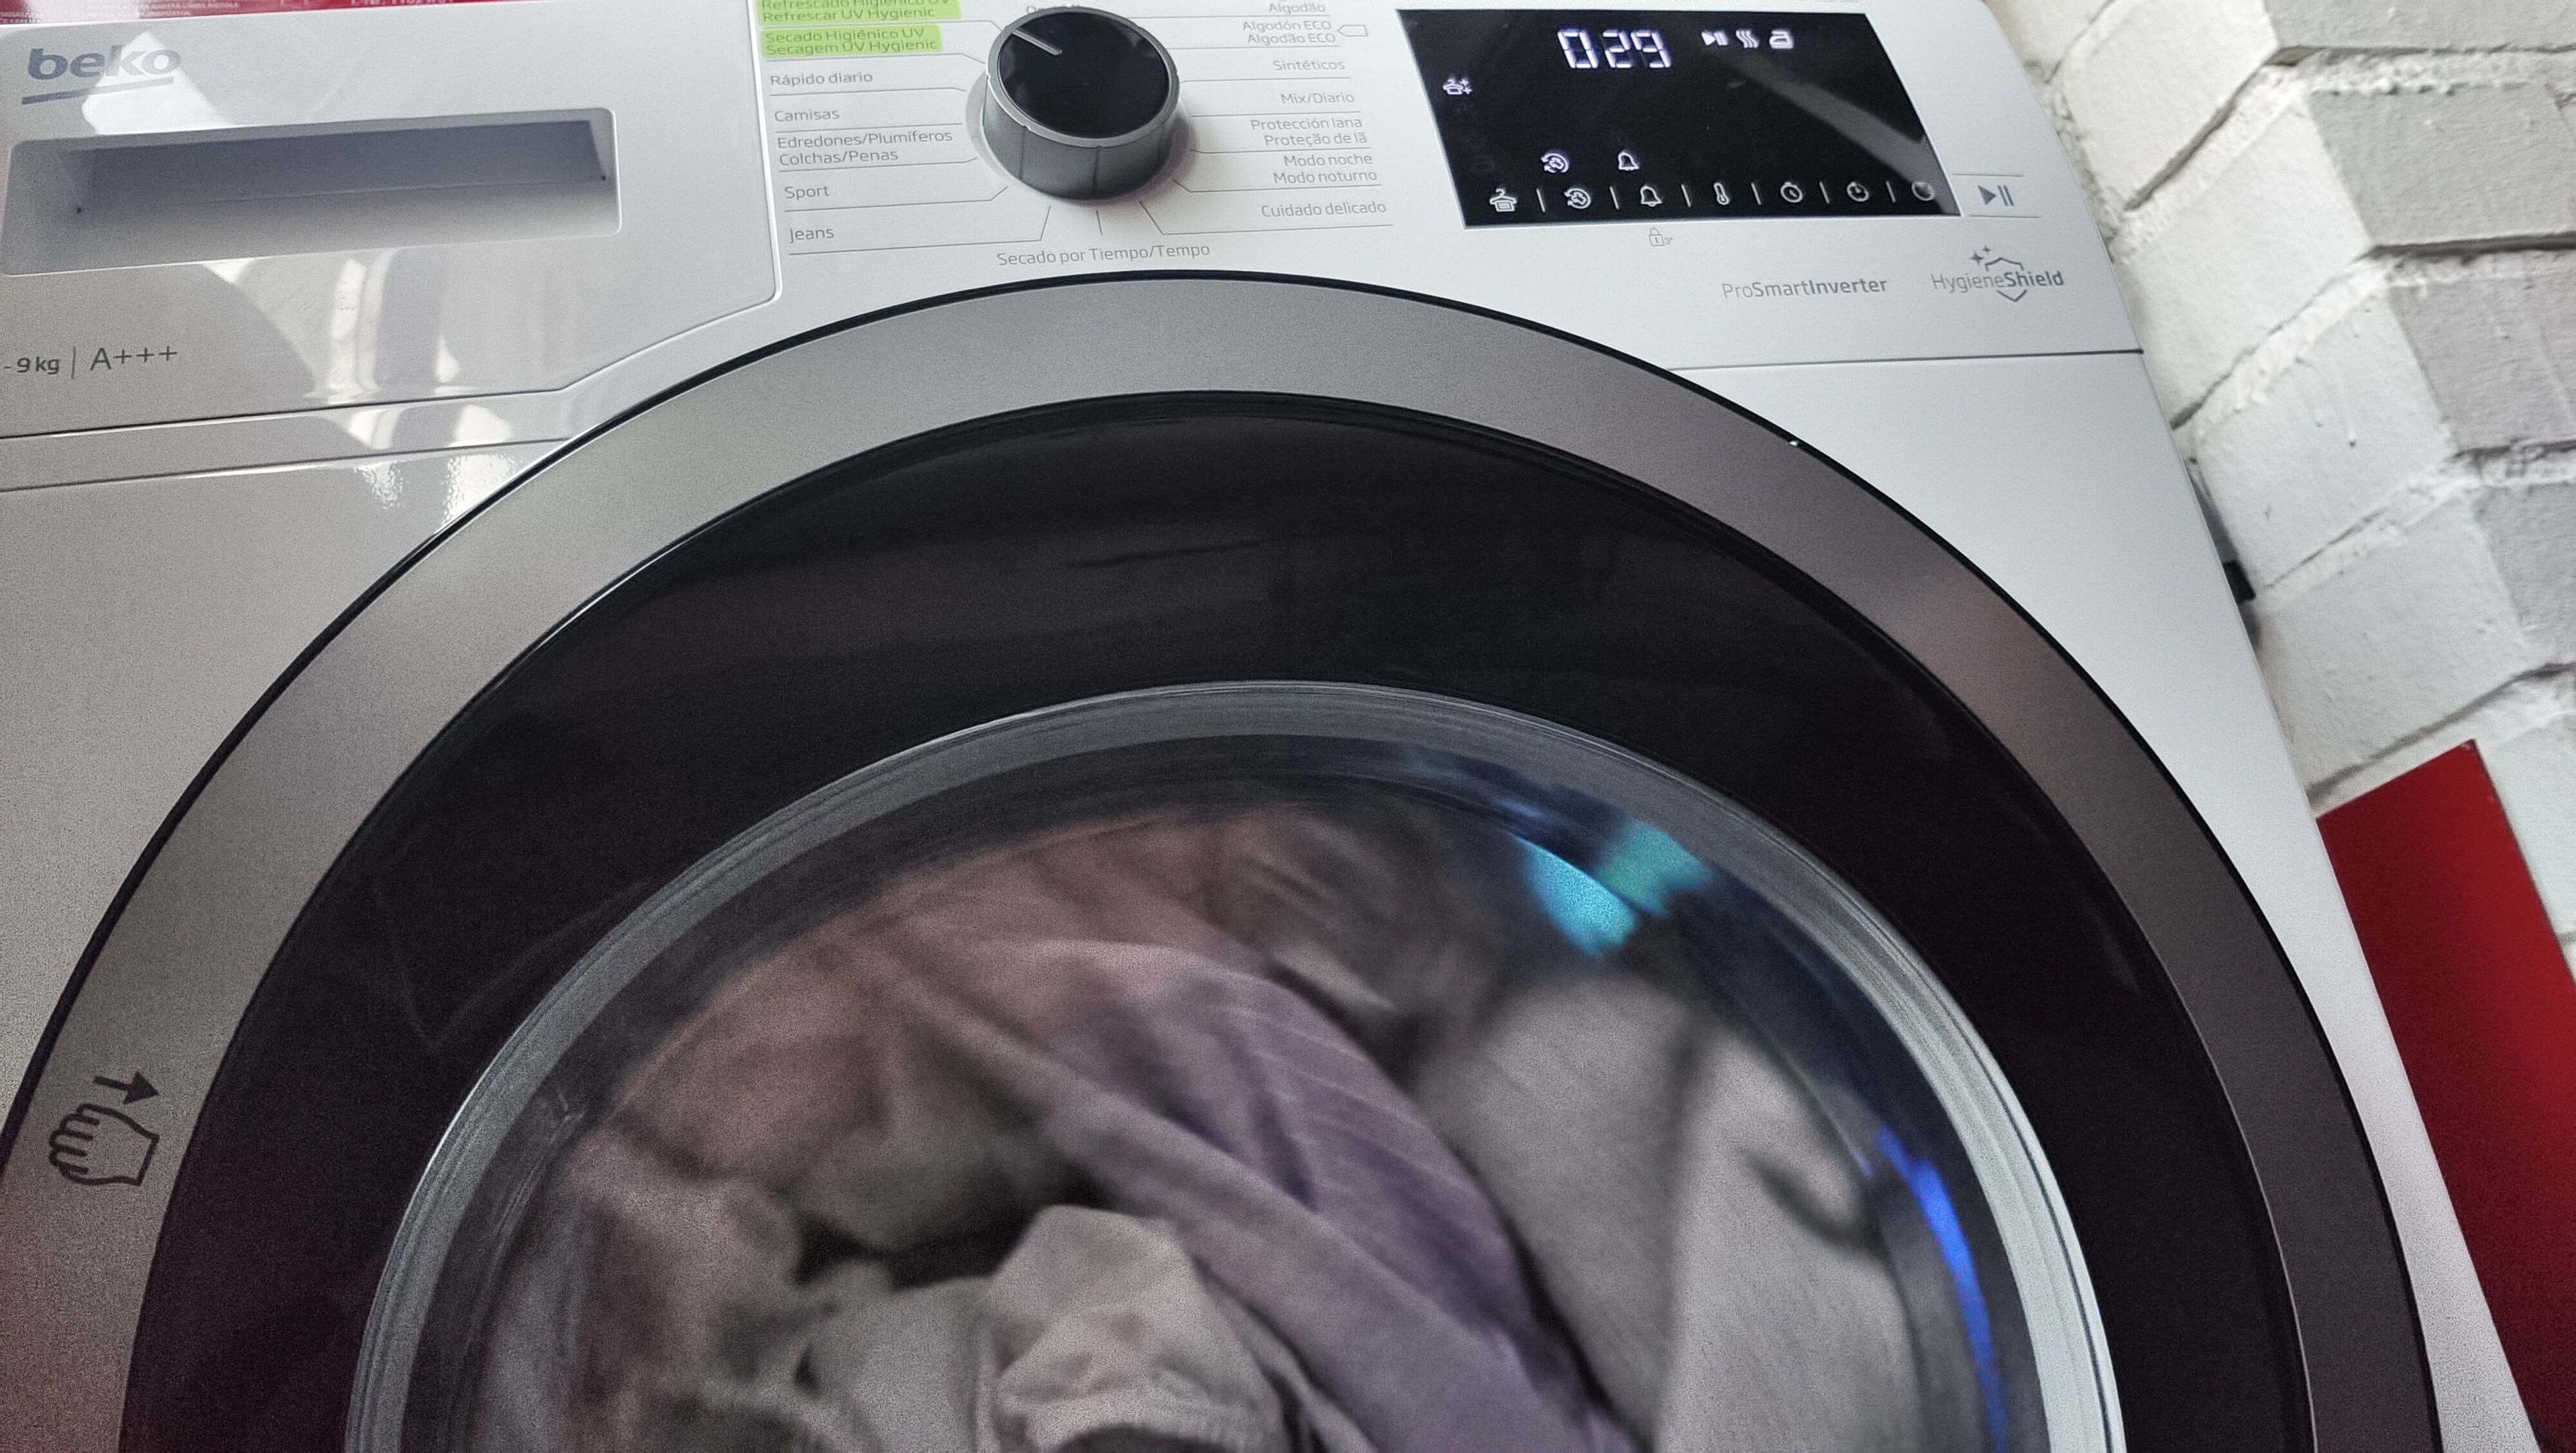 Secadora ropa con antivirus/bacterias? Probamos la HygieneShield Beko | Computer Hoy